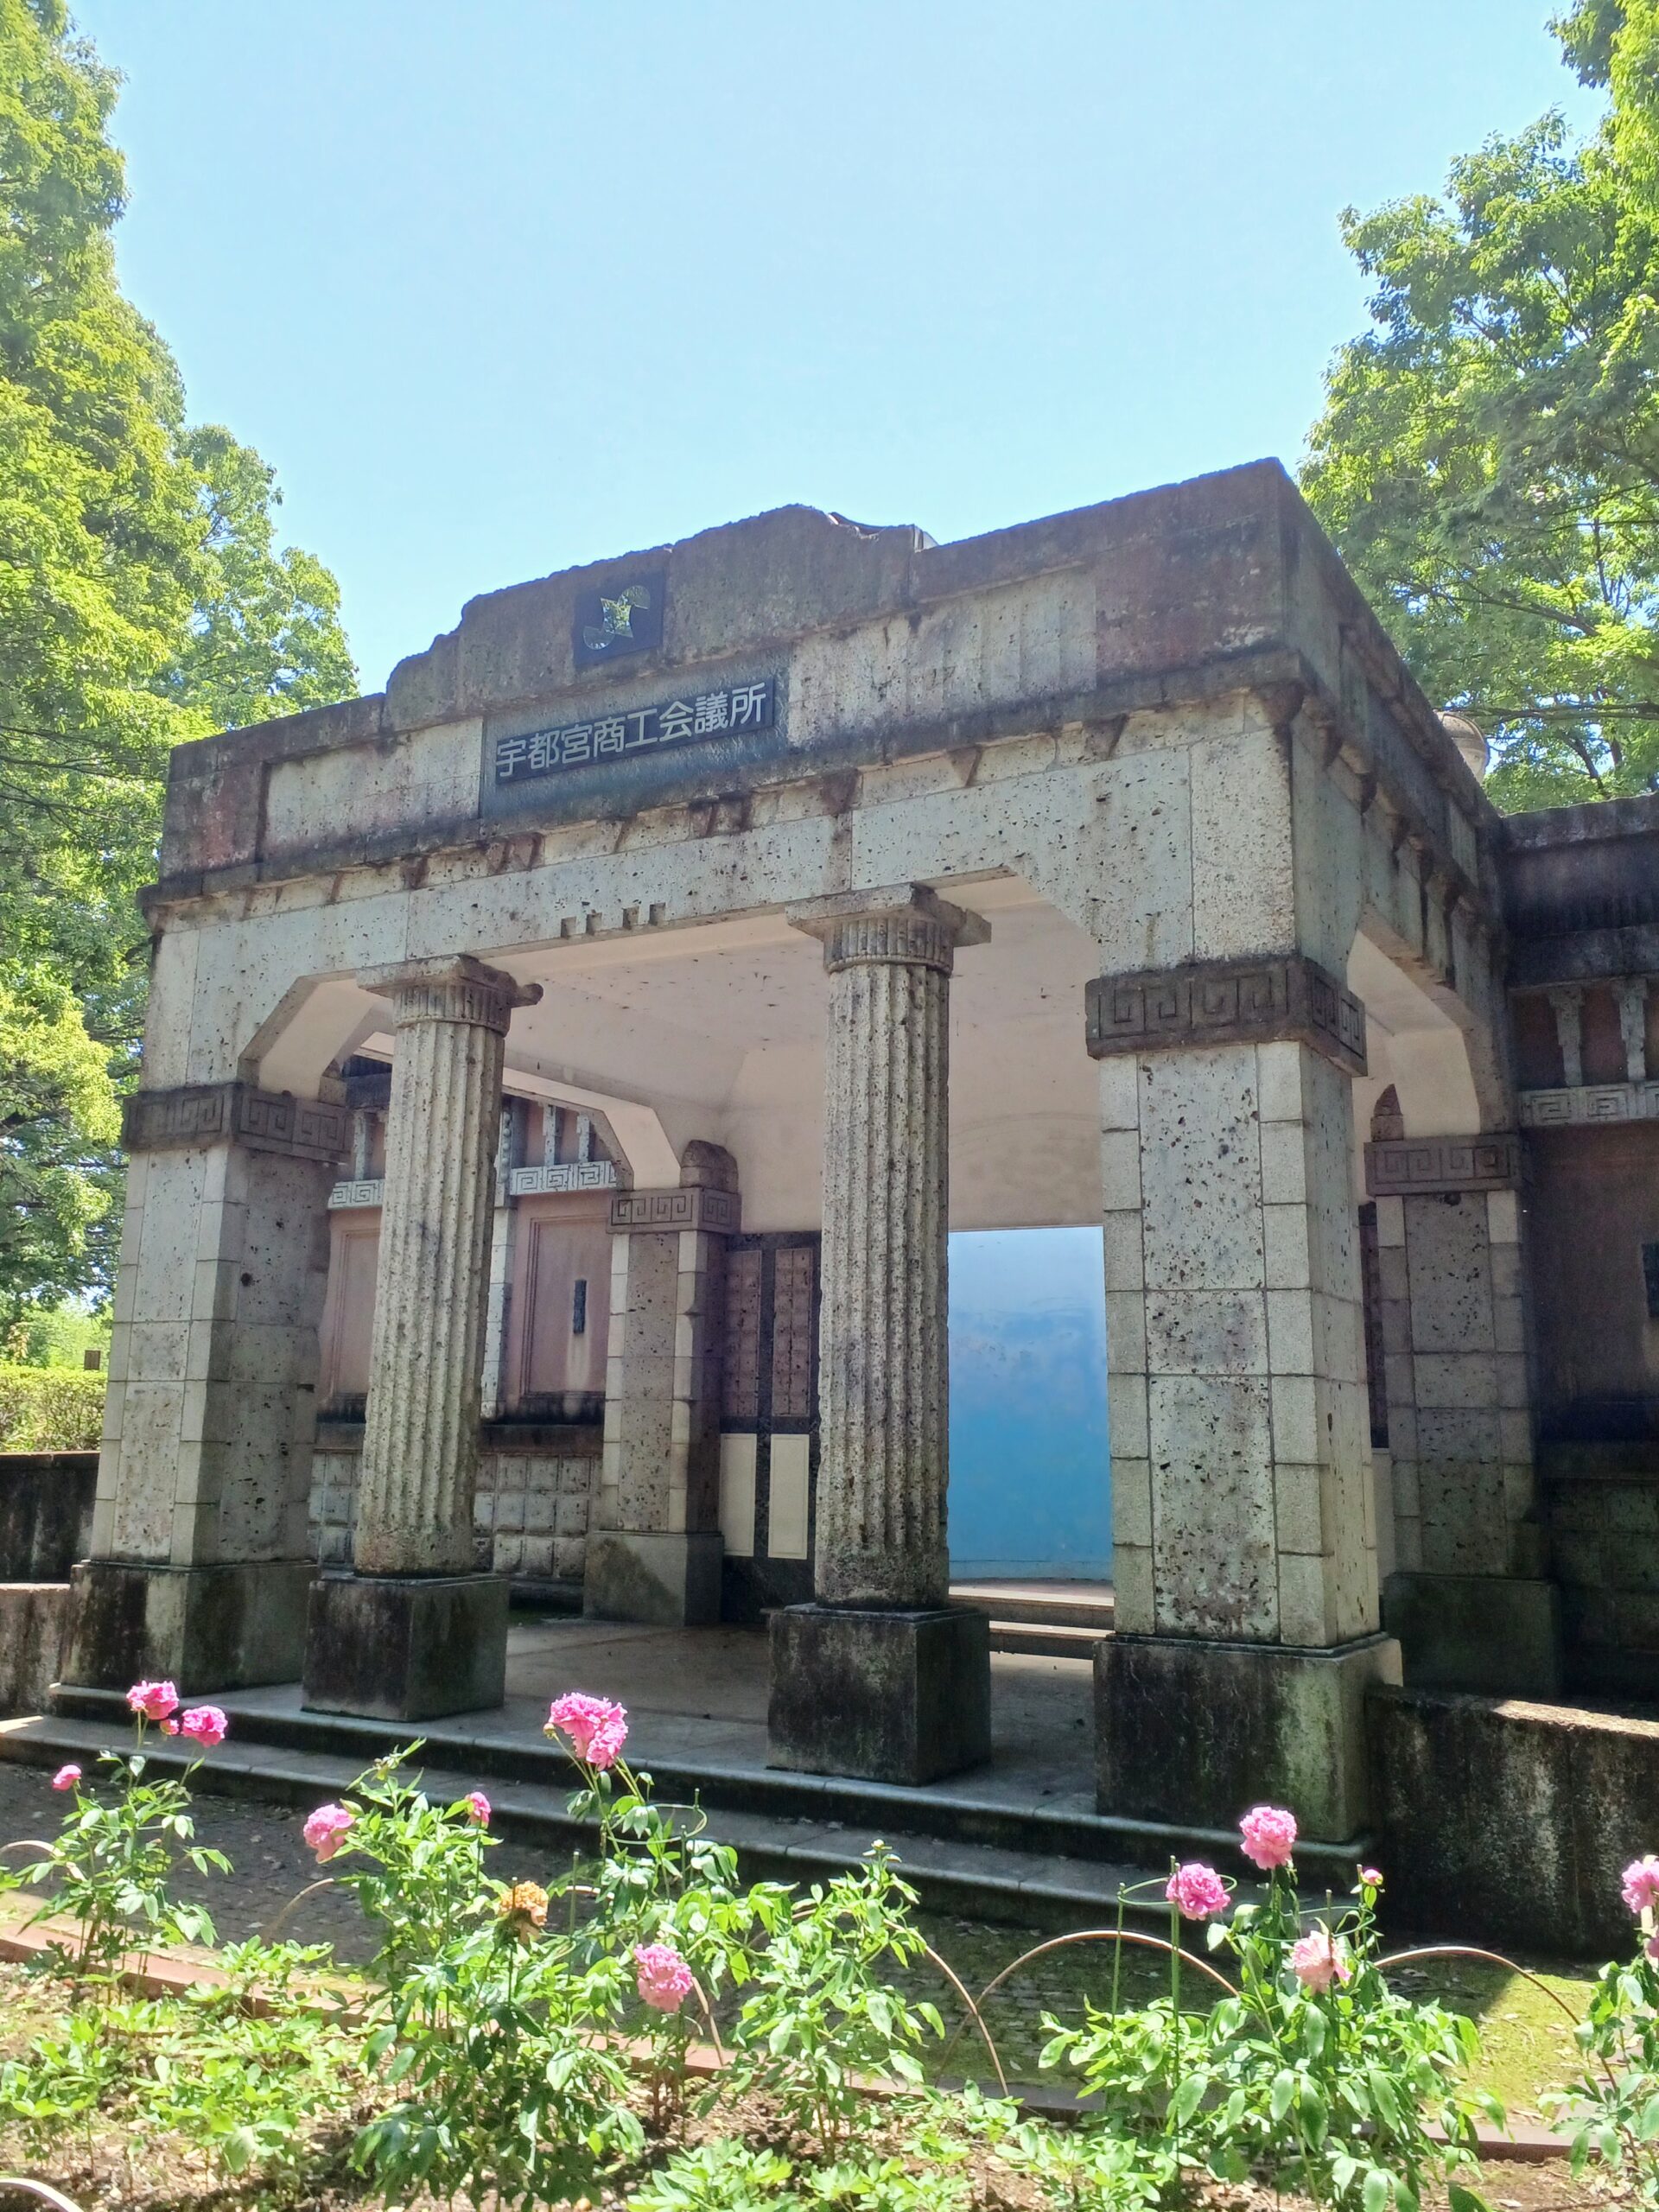 昭和3年(1928年)に建てられた旧宇都宮商工会議所の玄関部分です。